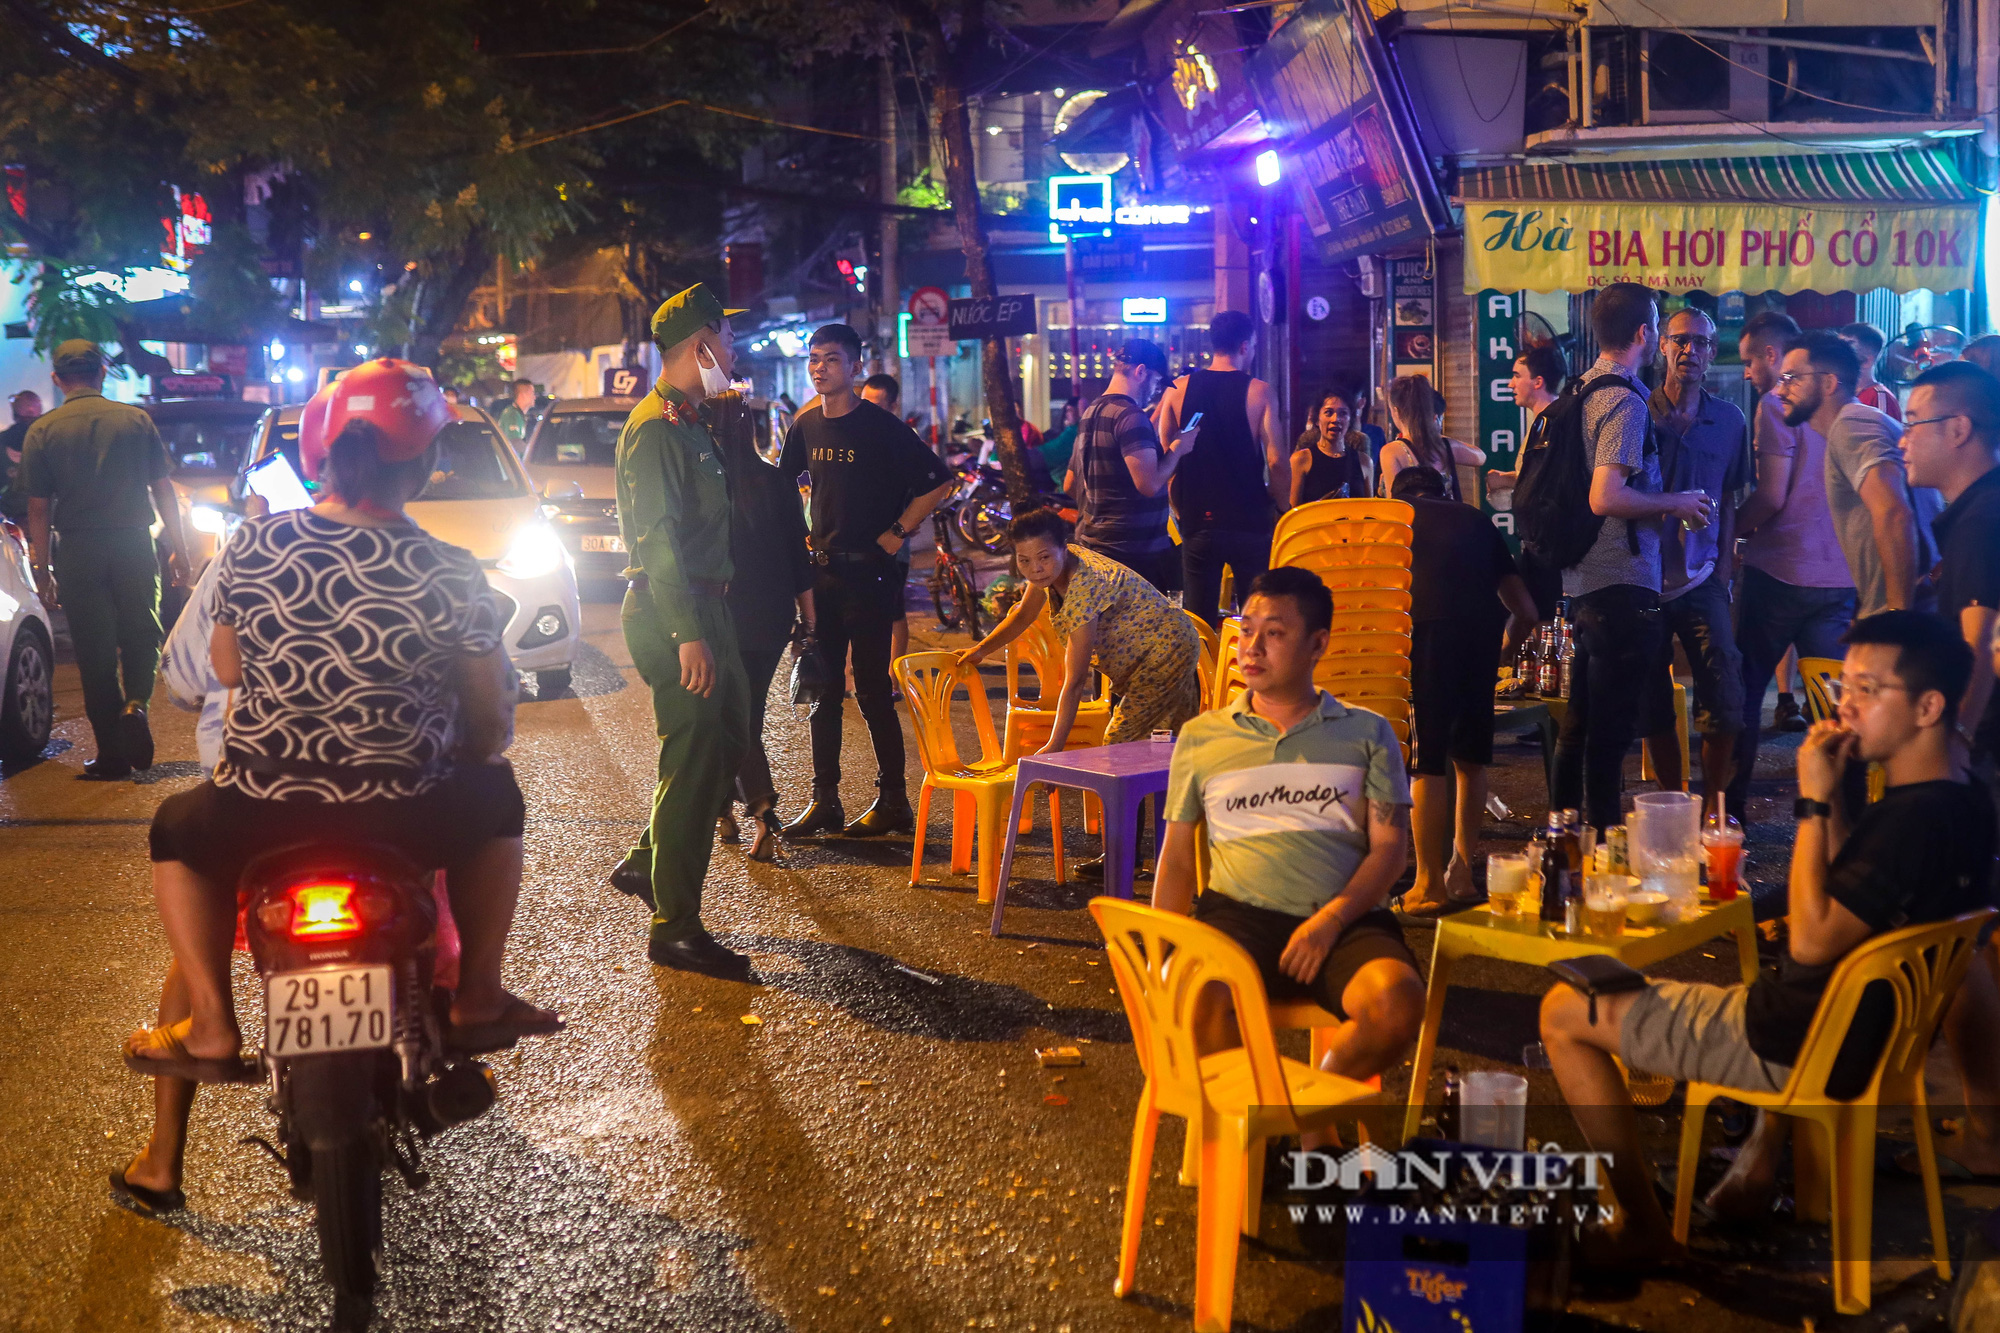 Hàng, quán ở Hà Nội đồng loạt thực hiện giãn cách trong đêm - Ảnh 4.